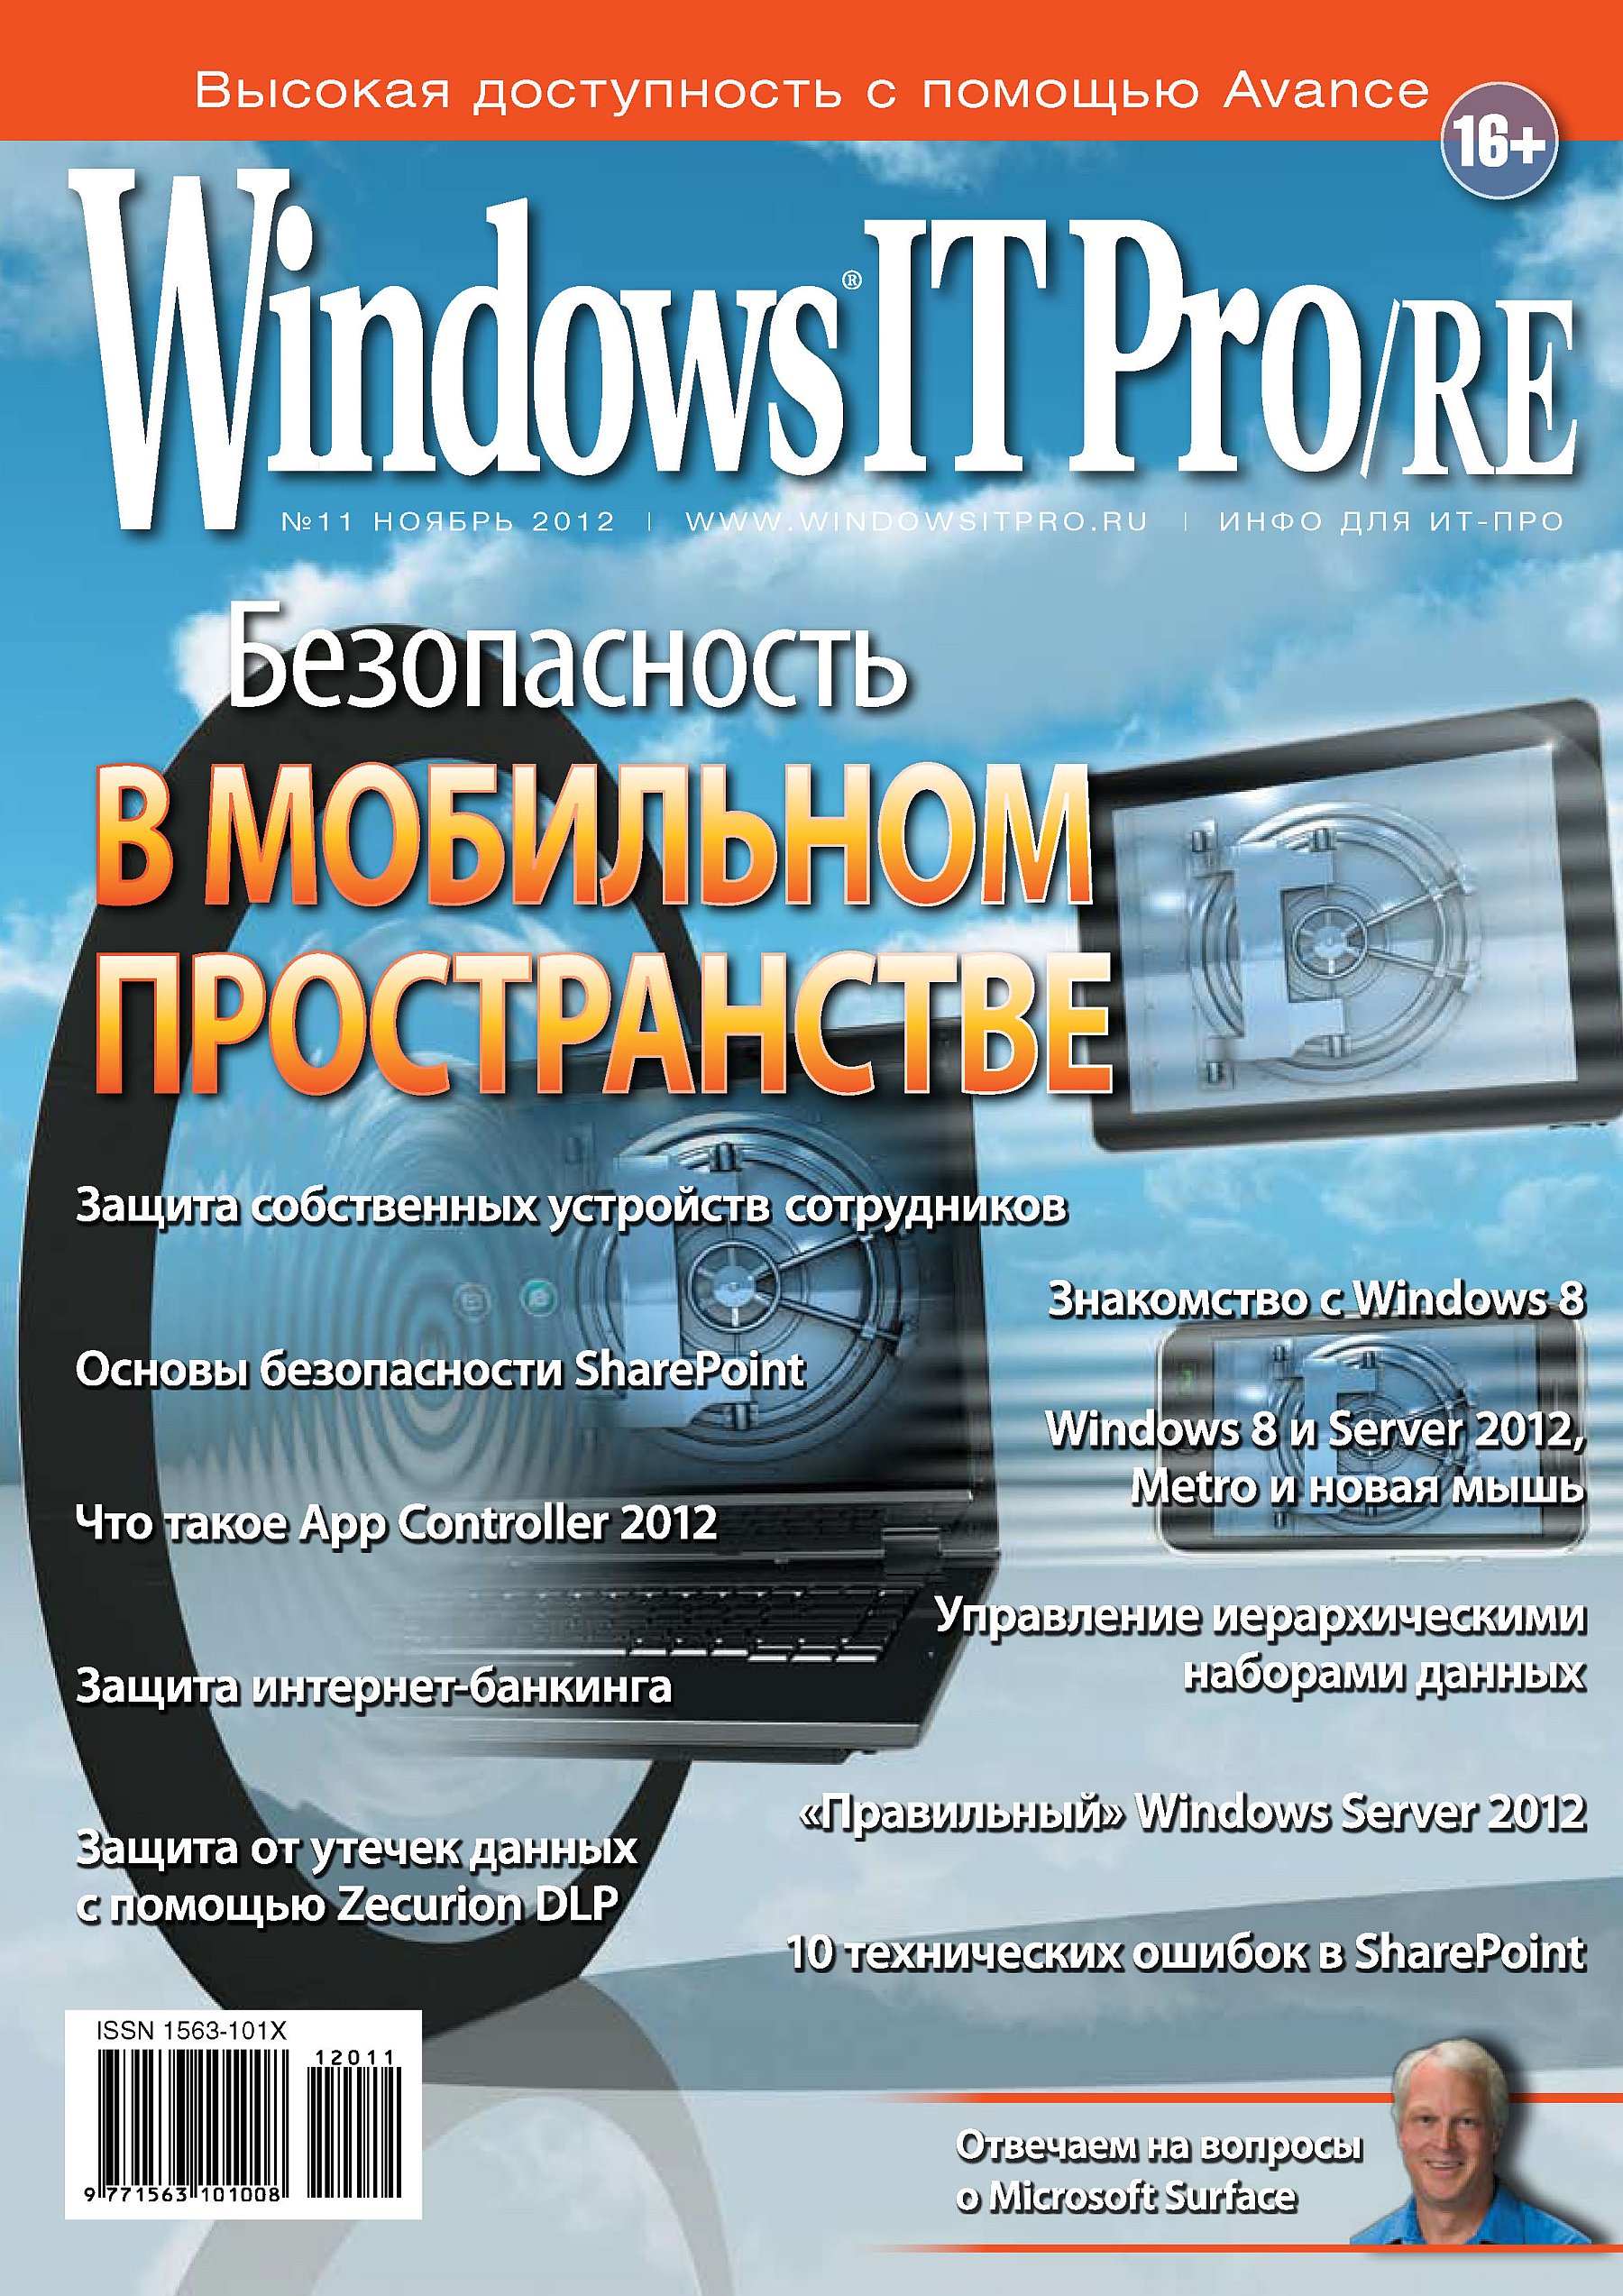 Windows IT Pro/RE№11/2012